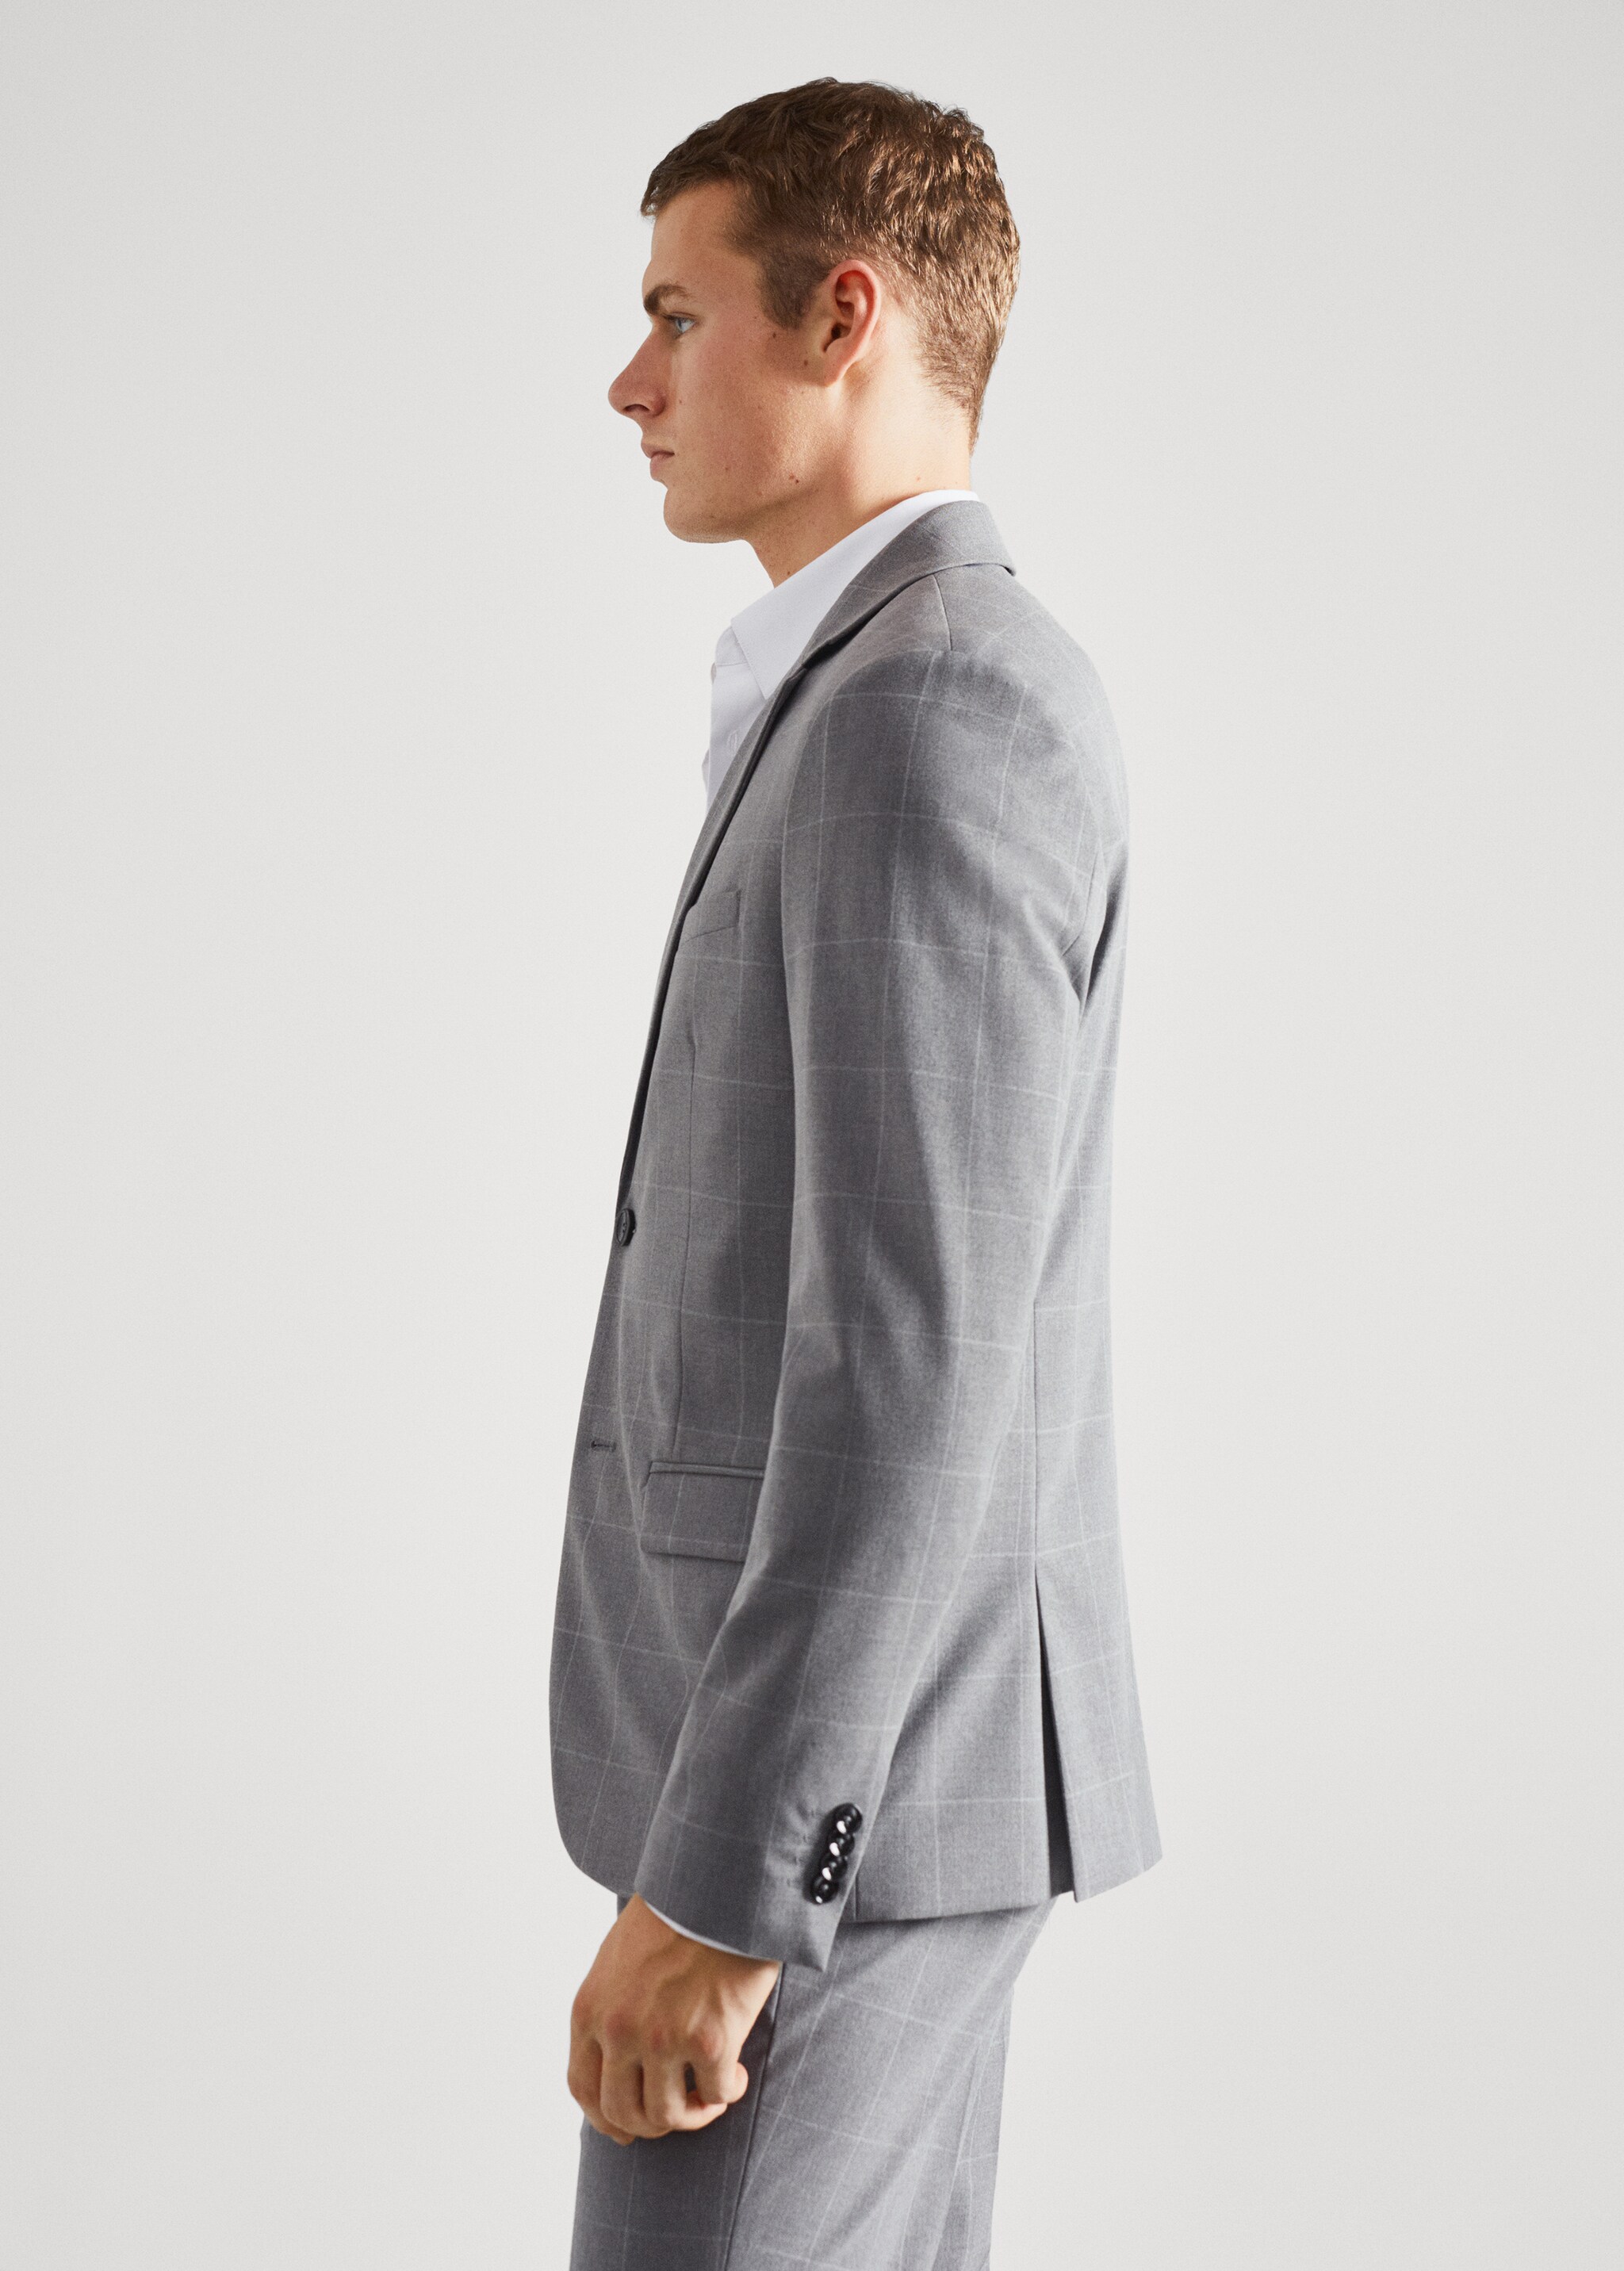 Super slim-fit suit jacket - Details of the article 6